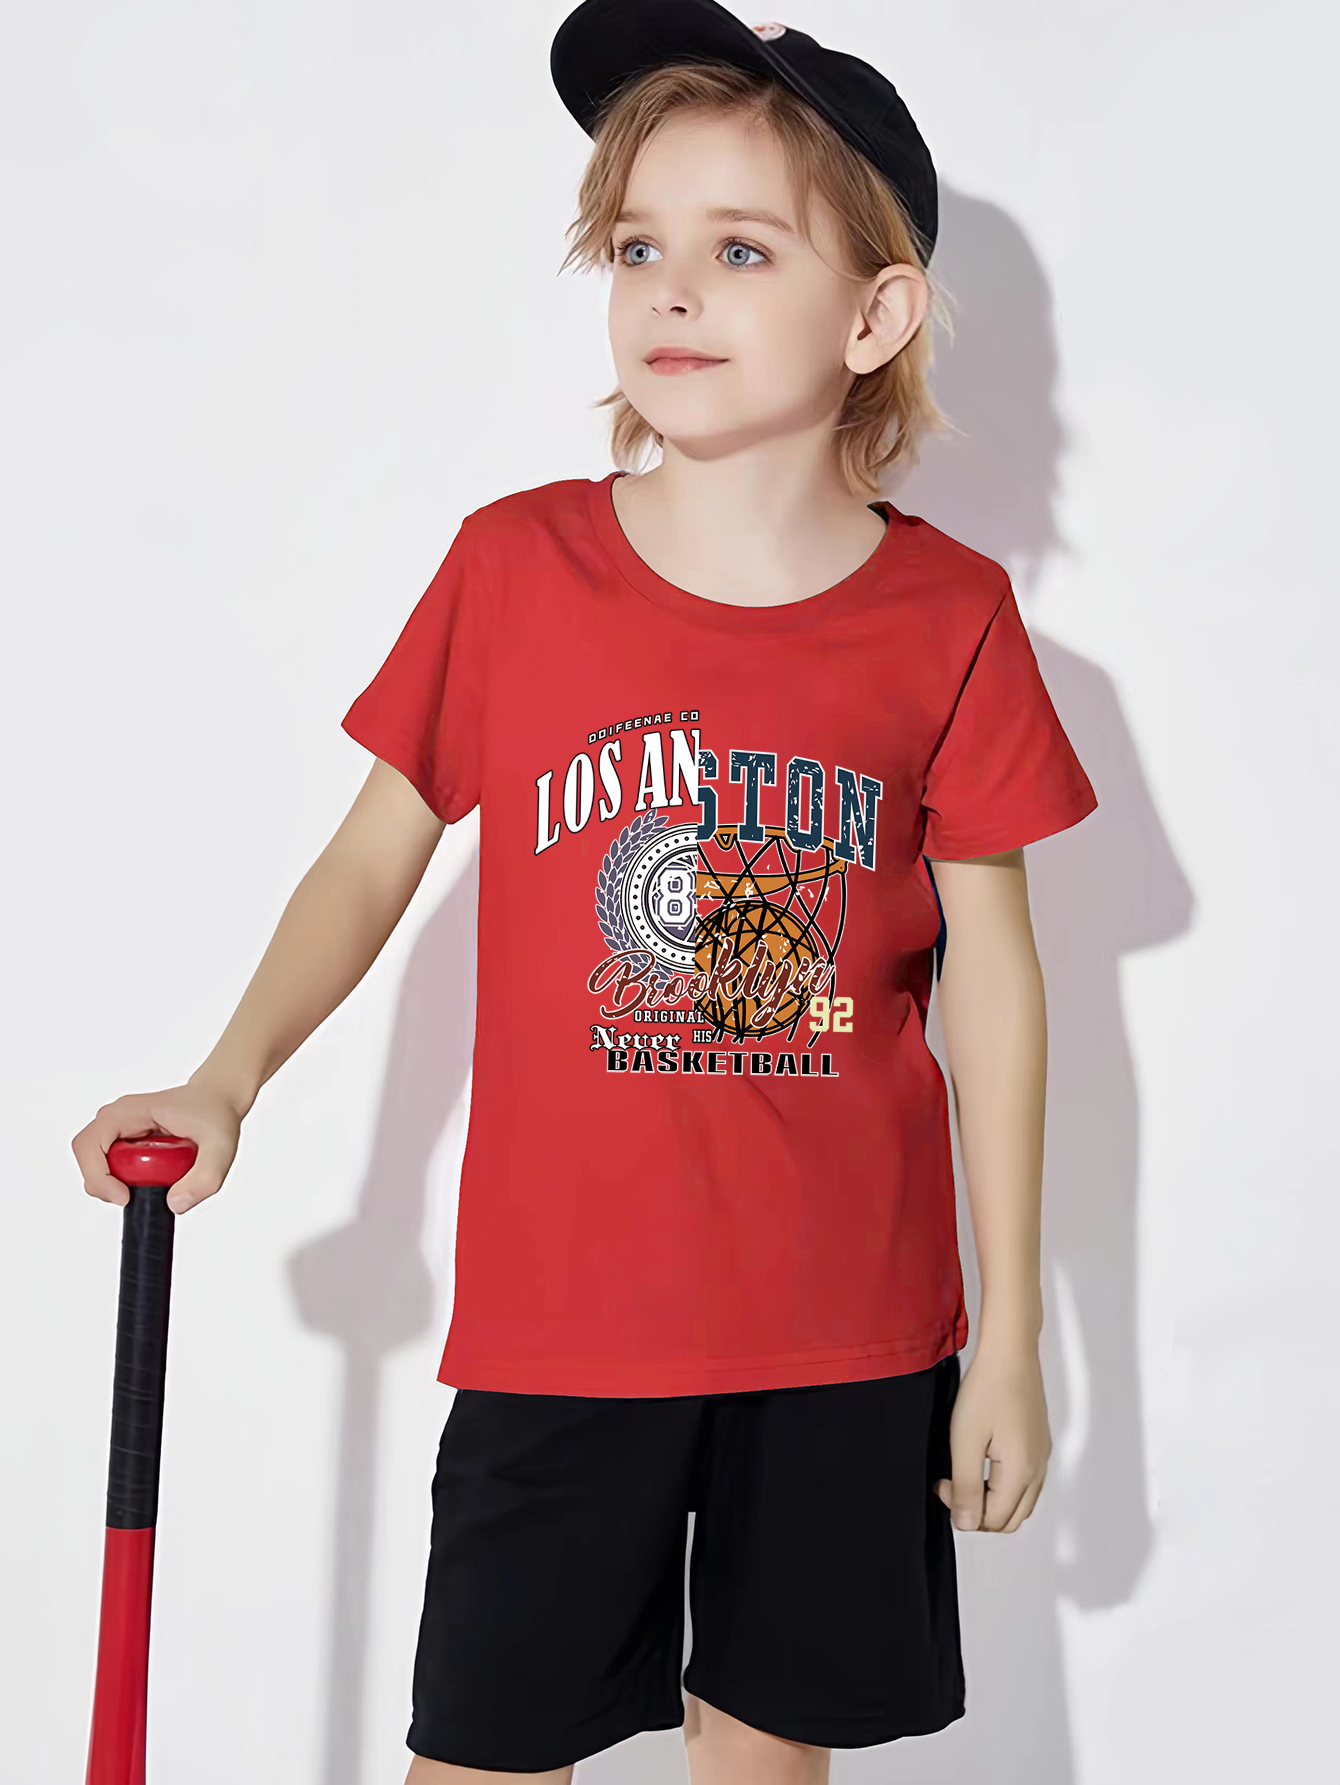 Camiseta Baloncesto Niño,Trajes Baloncesto Niños,Conjunto